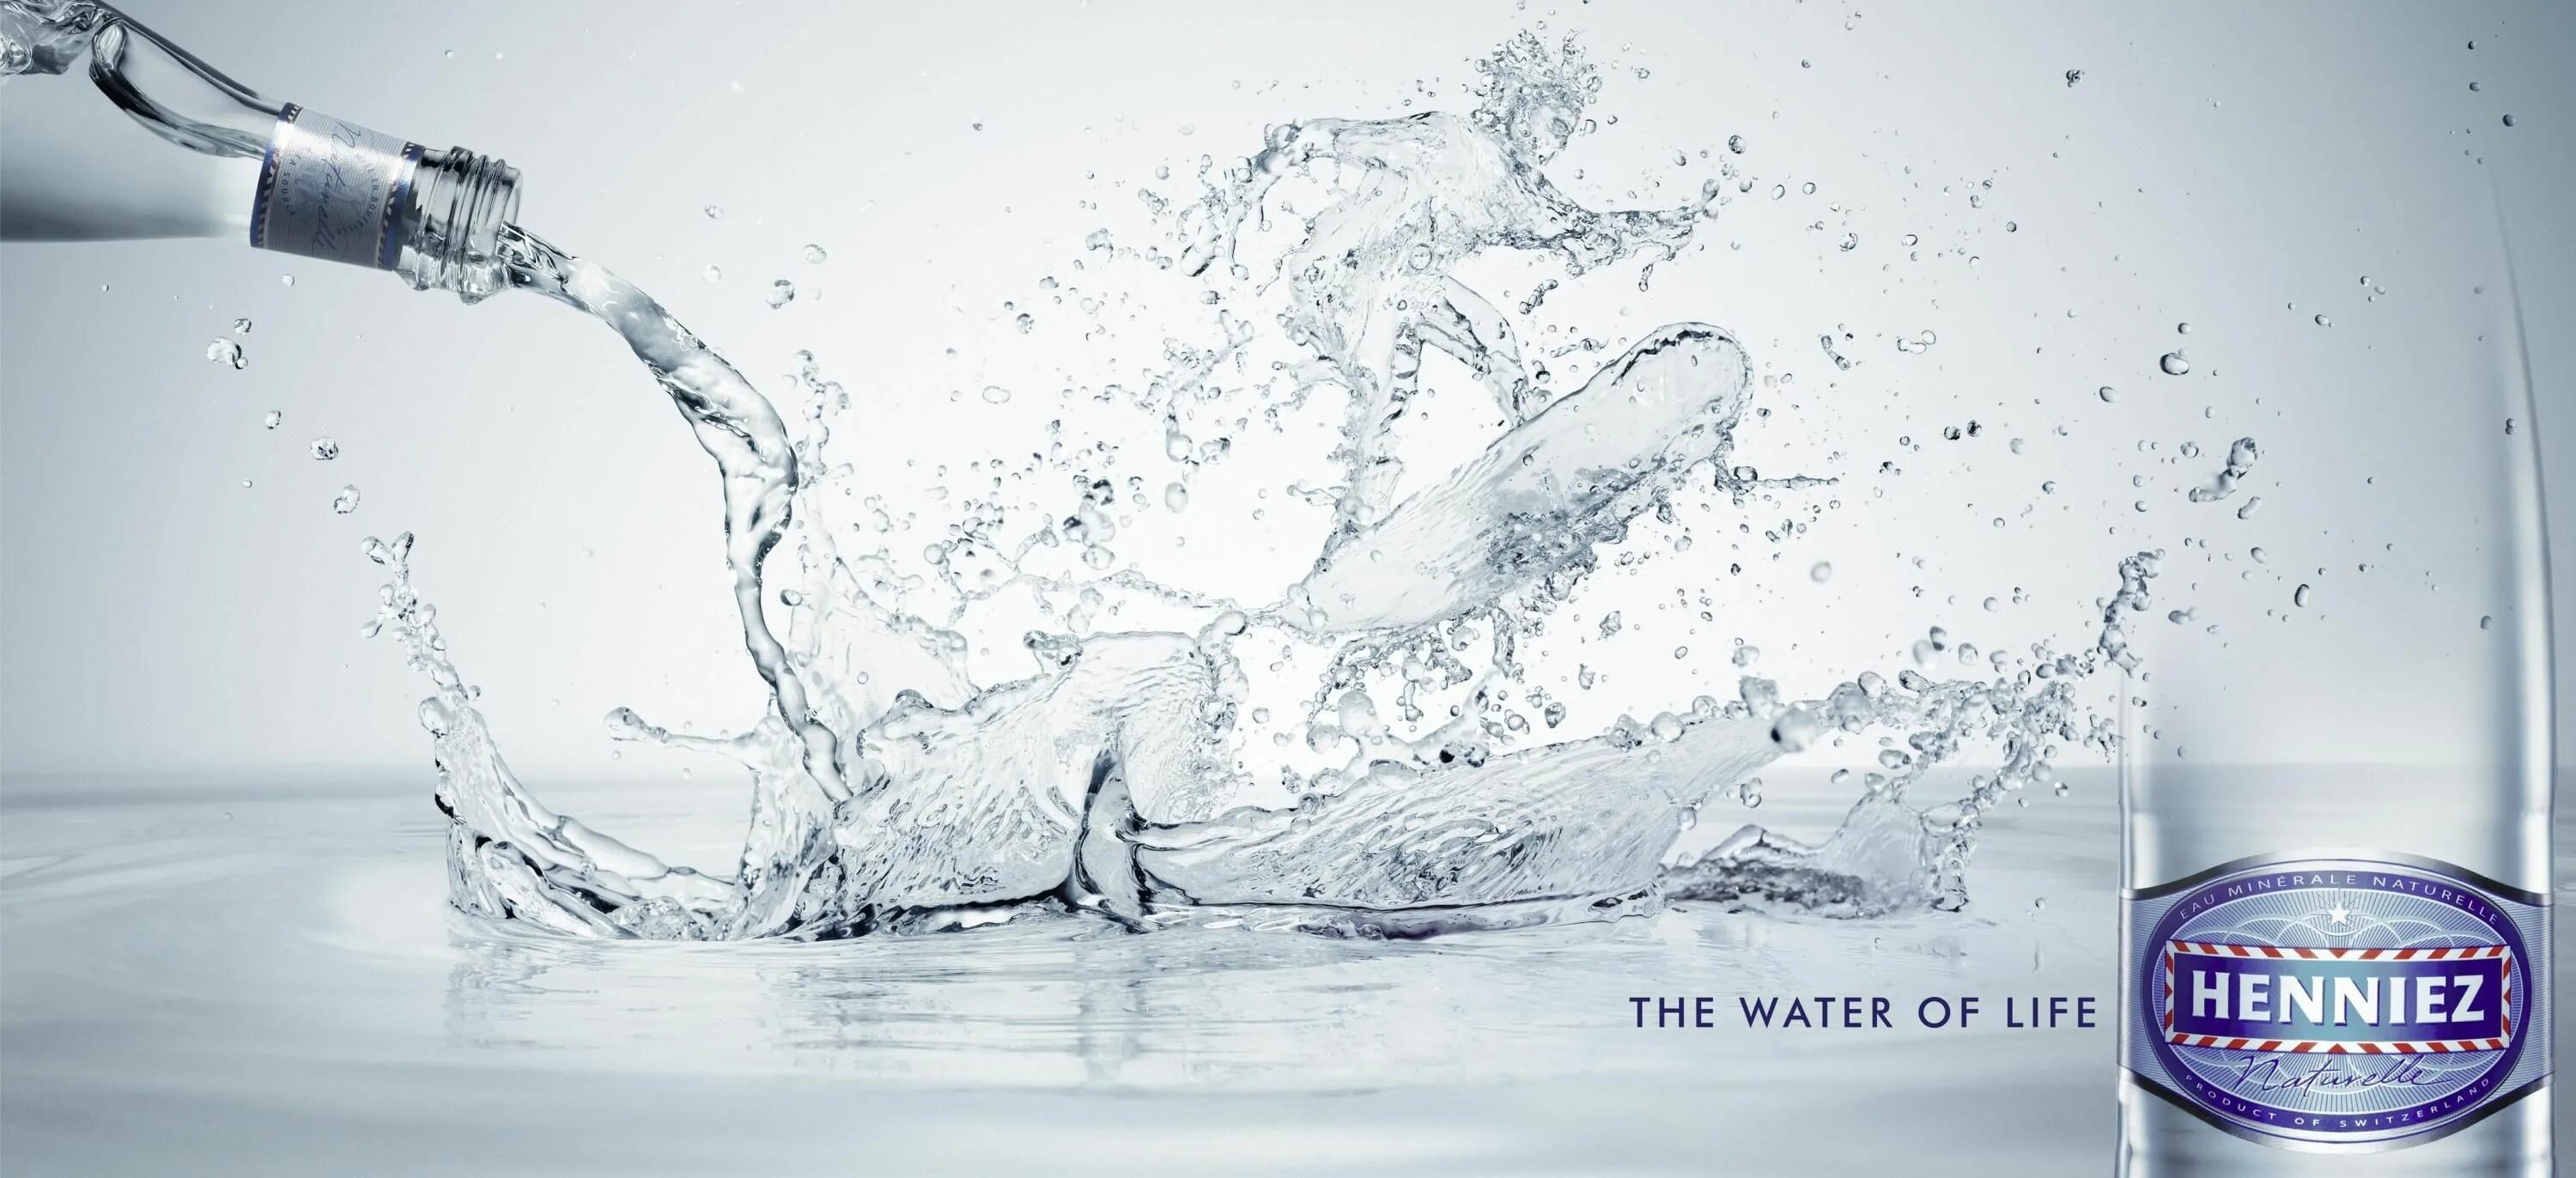 Вода 7 1. Креативная реклама питьевой воды. Креативная вода. Печатная реклама воды. Крутая реклама воды.